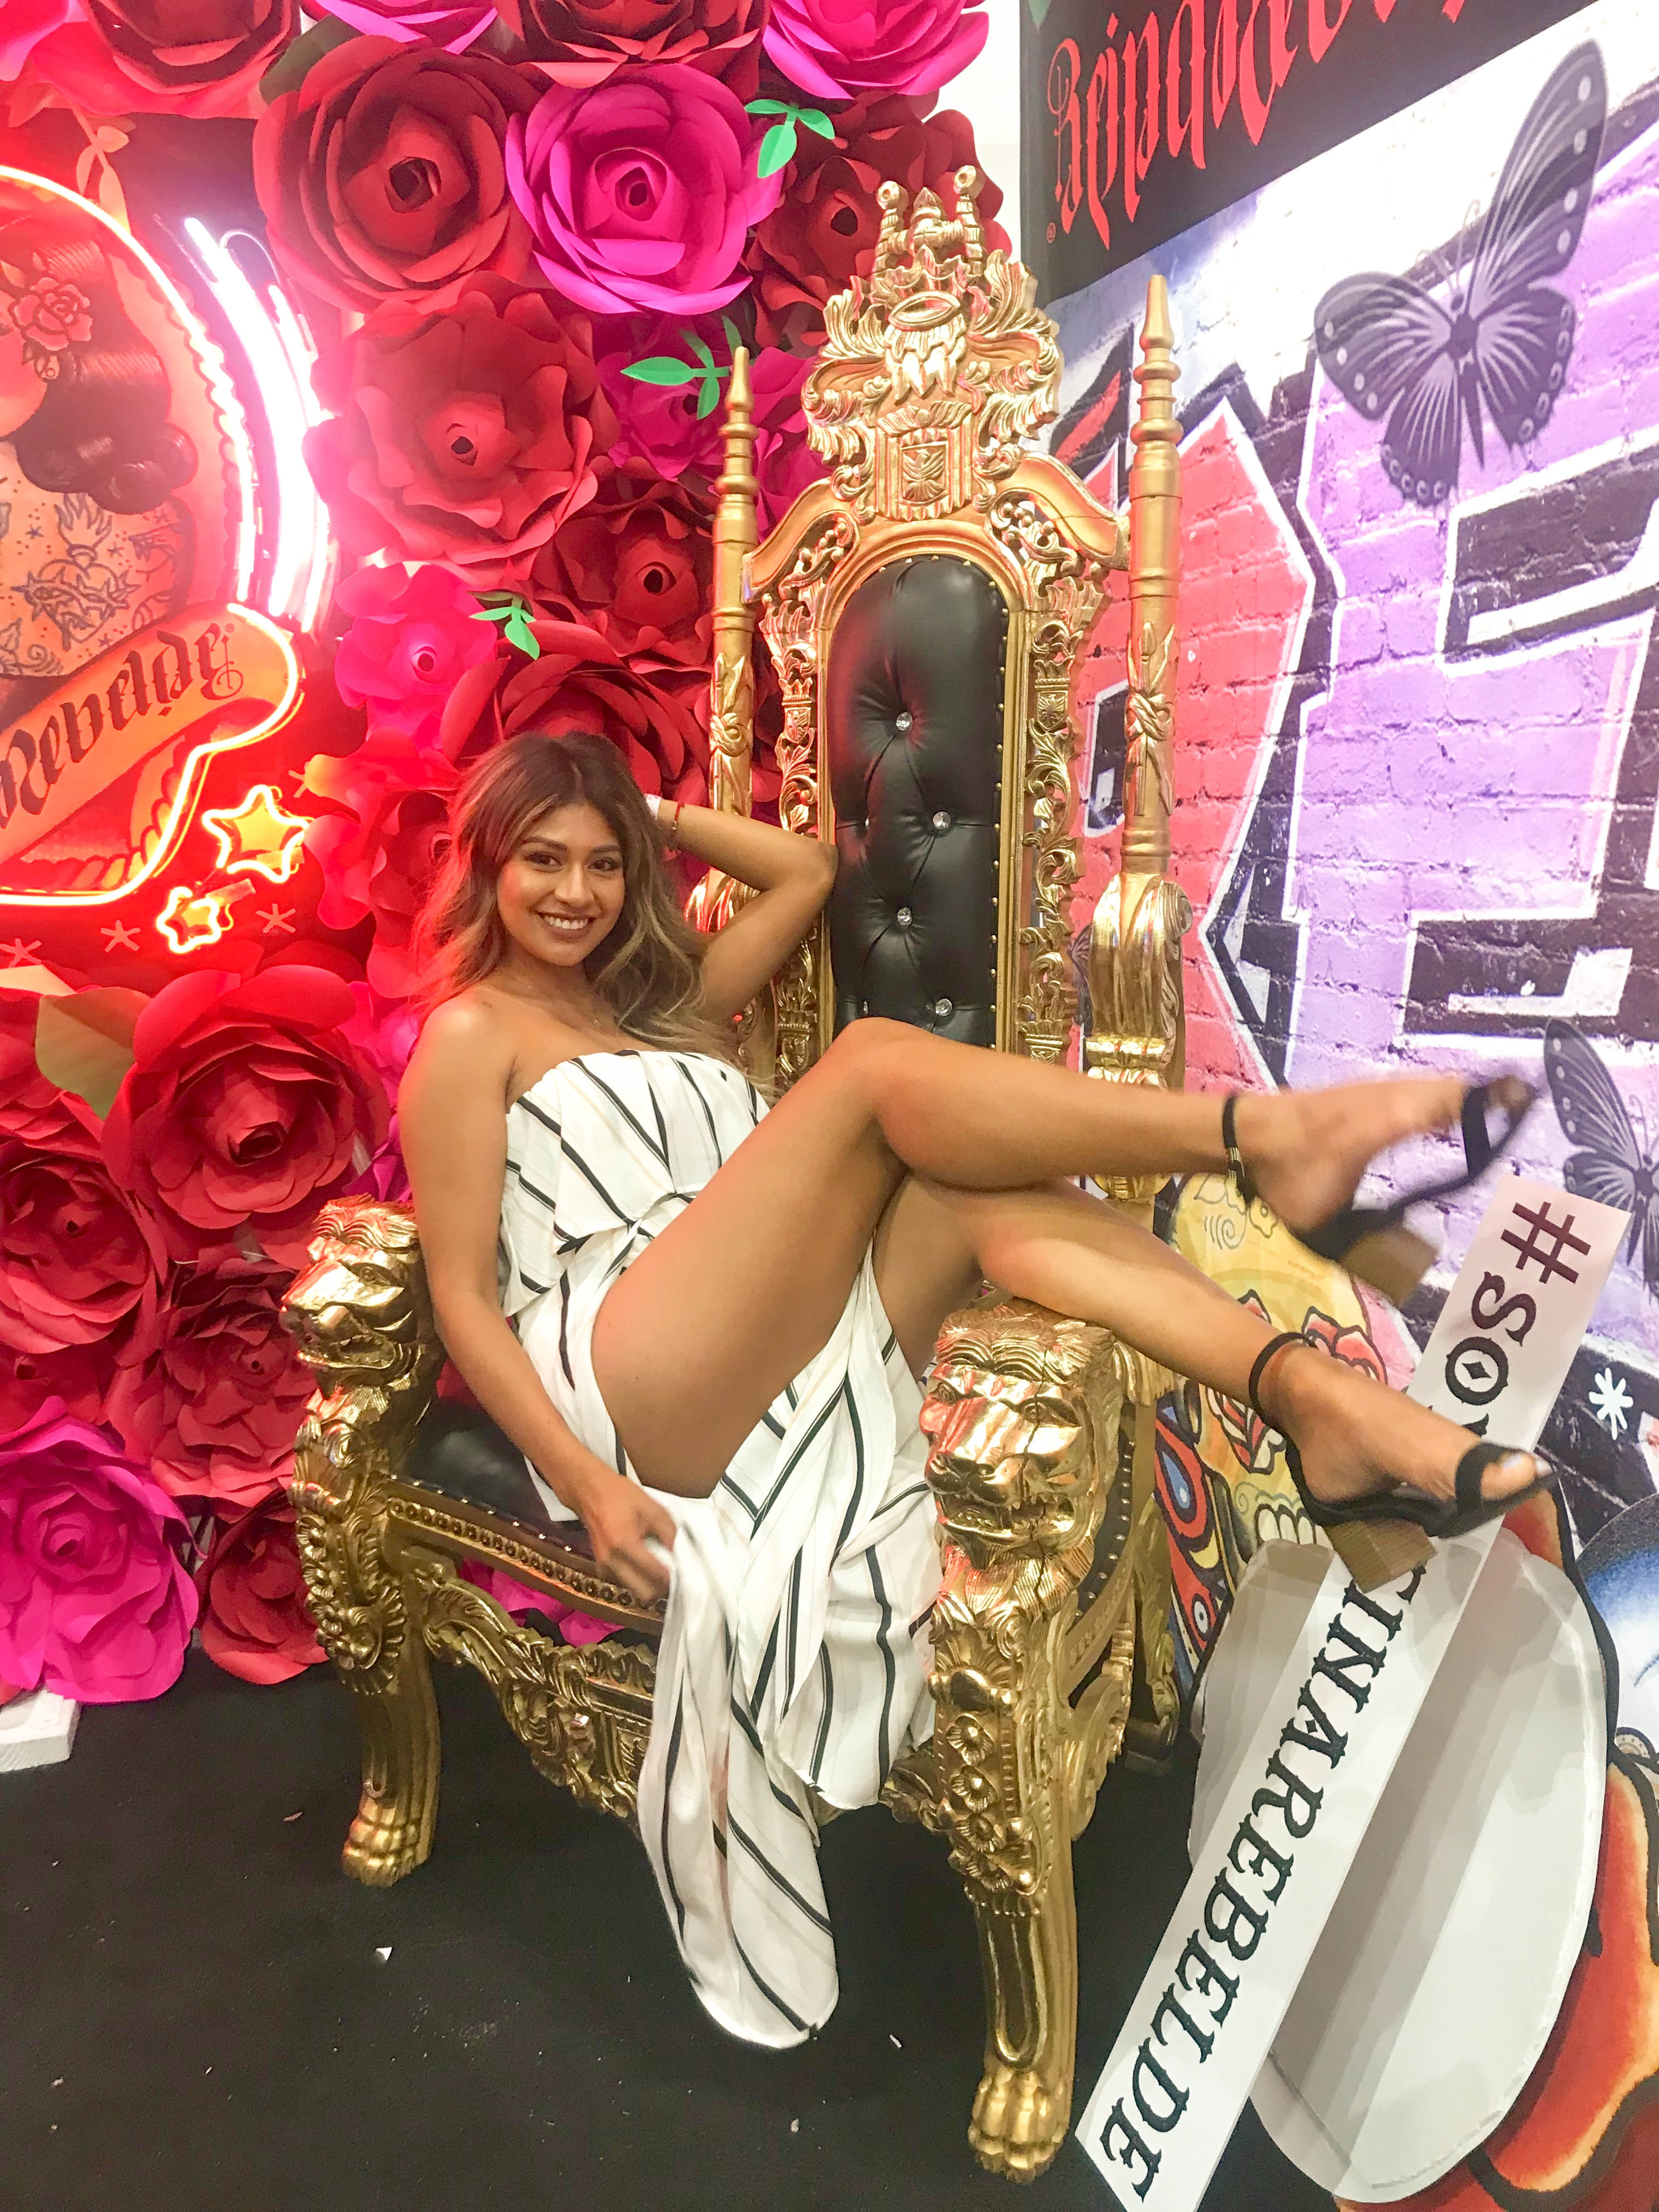 BeautyConLA 2018 - Chair 